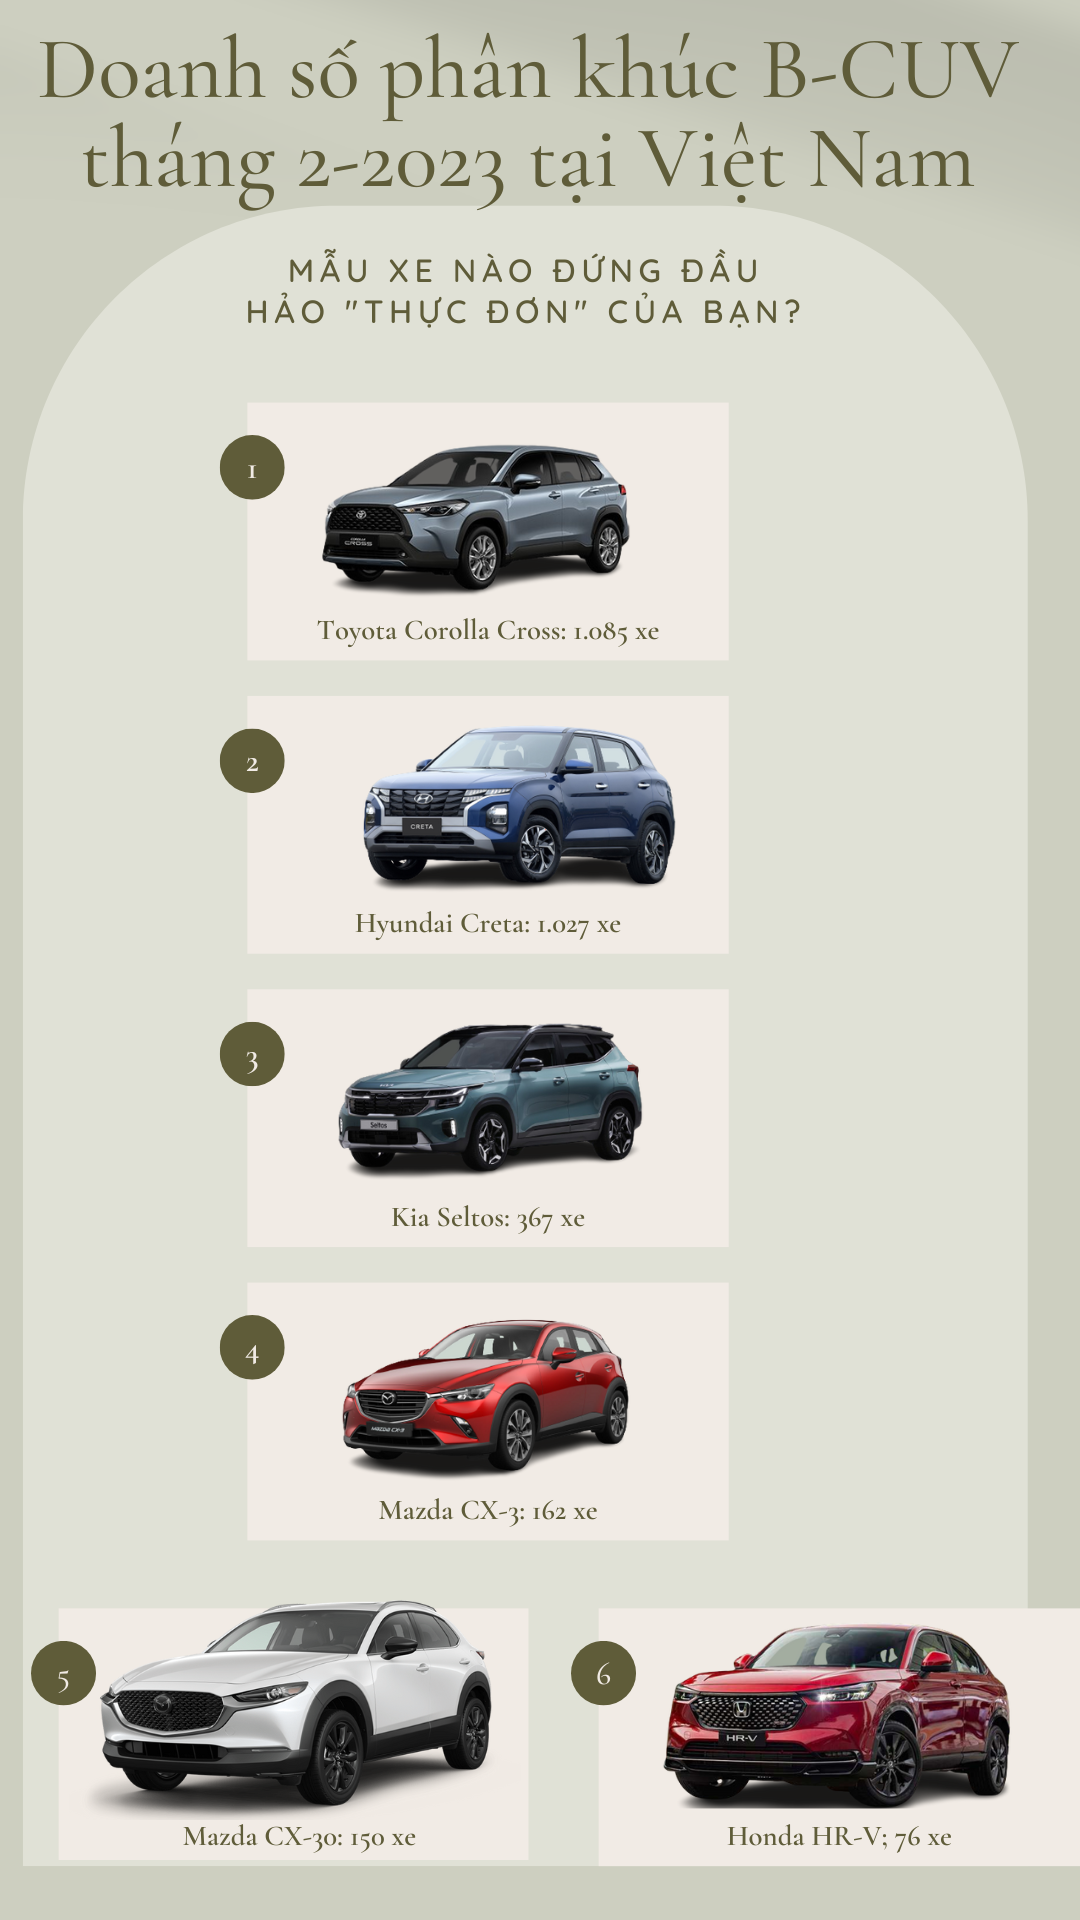 Mẫu xe nào xứng tầm đối đầu với Hyundai Creta và Toyota Corolla Cross? - 1